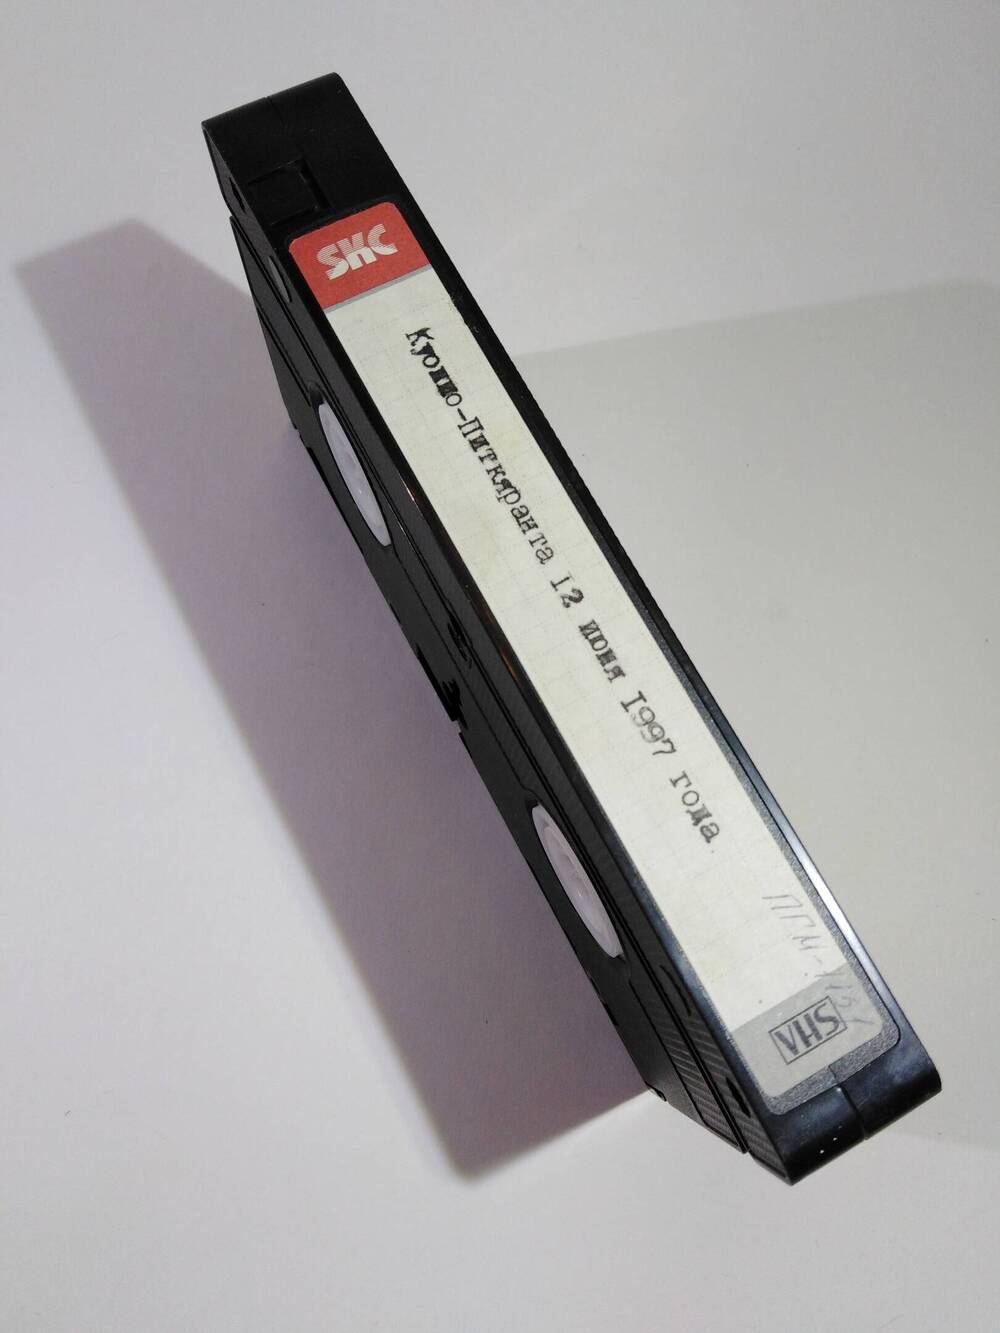 Видеокассета Е-180 с записью празднования 5-летия побратимских  связей Куопио-Питкяранта 12 июня 1997 г. Вложена в оригинальную упаковку.